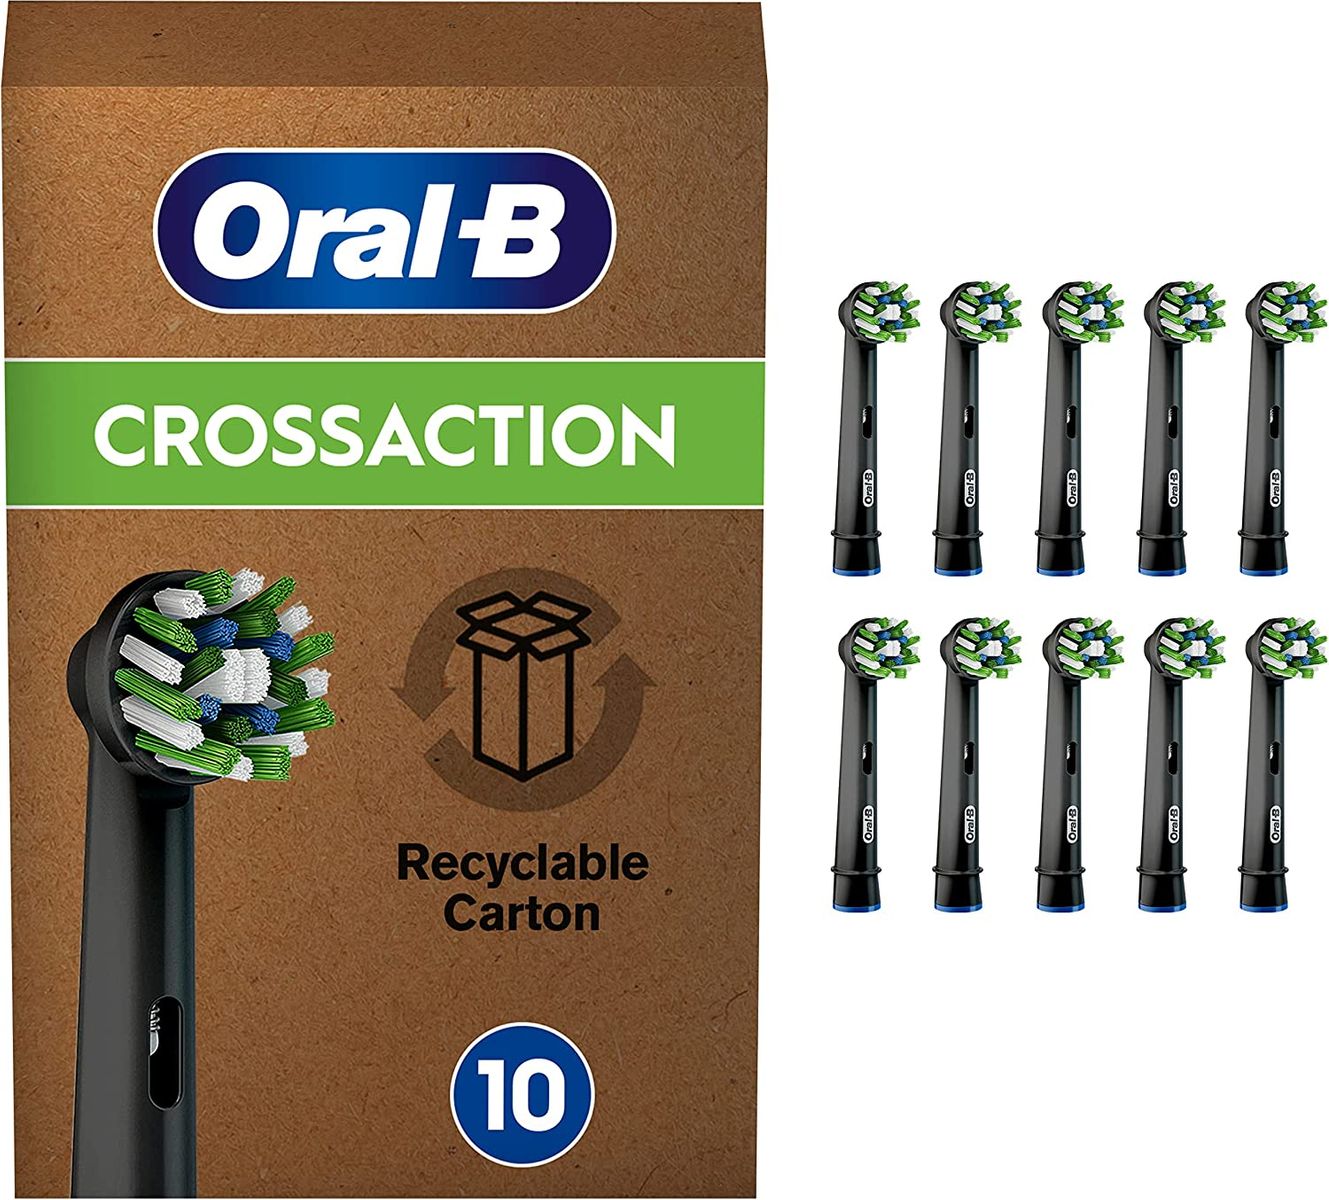 Oral-B CrossAction Aufsteckbürsten für elektrische Zahnbürste, 10 Stück, ganzheitliche Mundreinigung mit CleanMaximiser-Borsten, Black Edition, schwarz, briefkastenfähige Verpackung